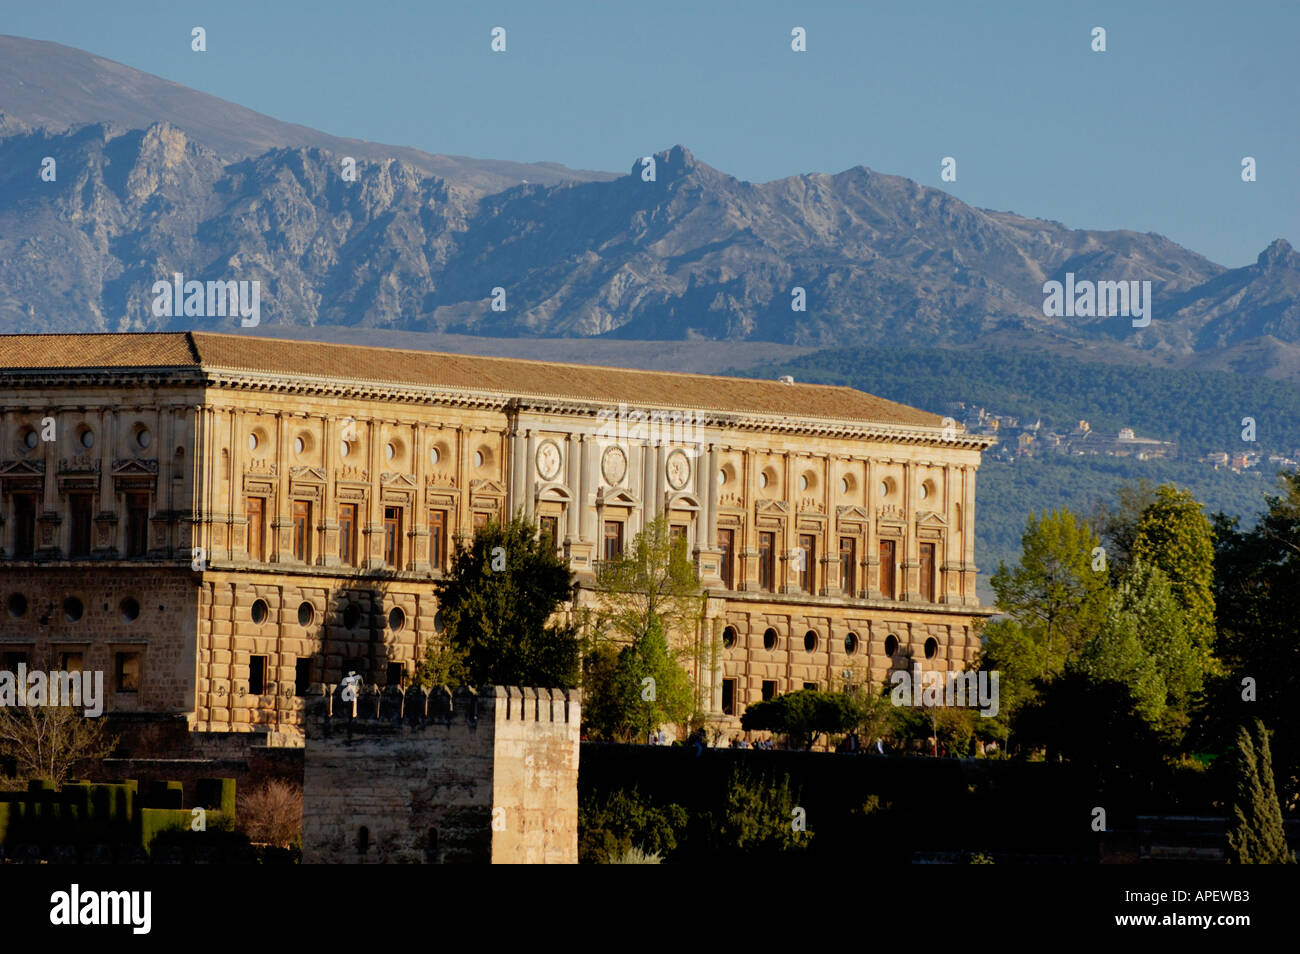 Palacio De Carlos V / Palace of Charles V, Alhambra, Granada, Spain Stock Photo